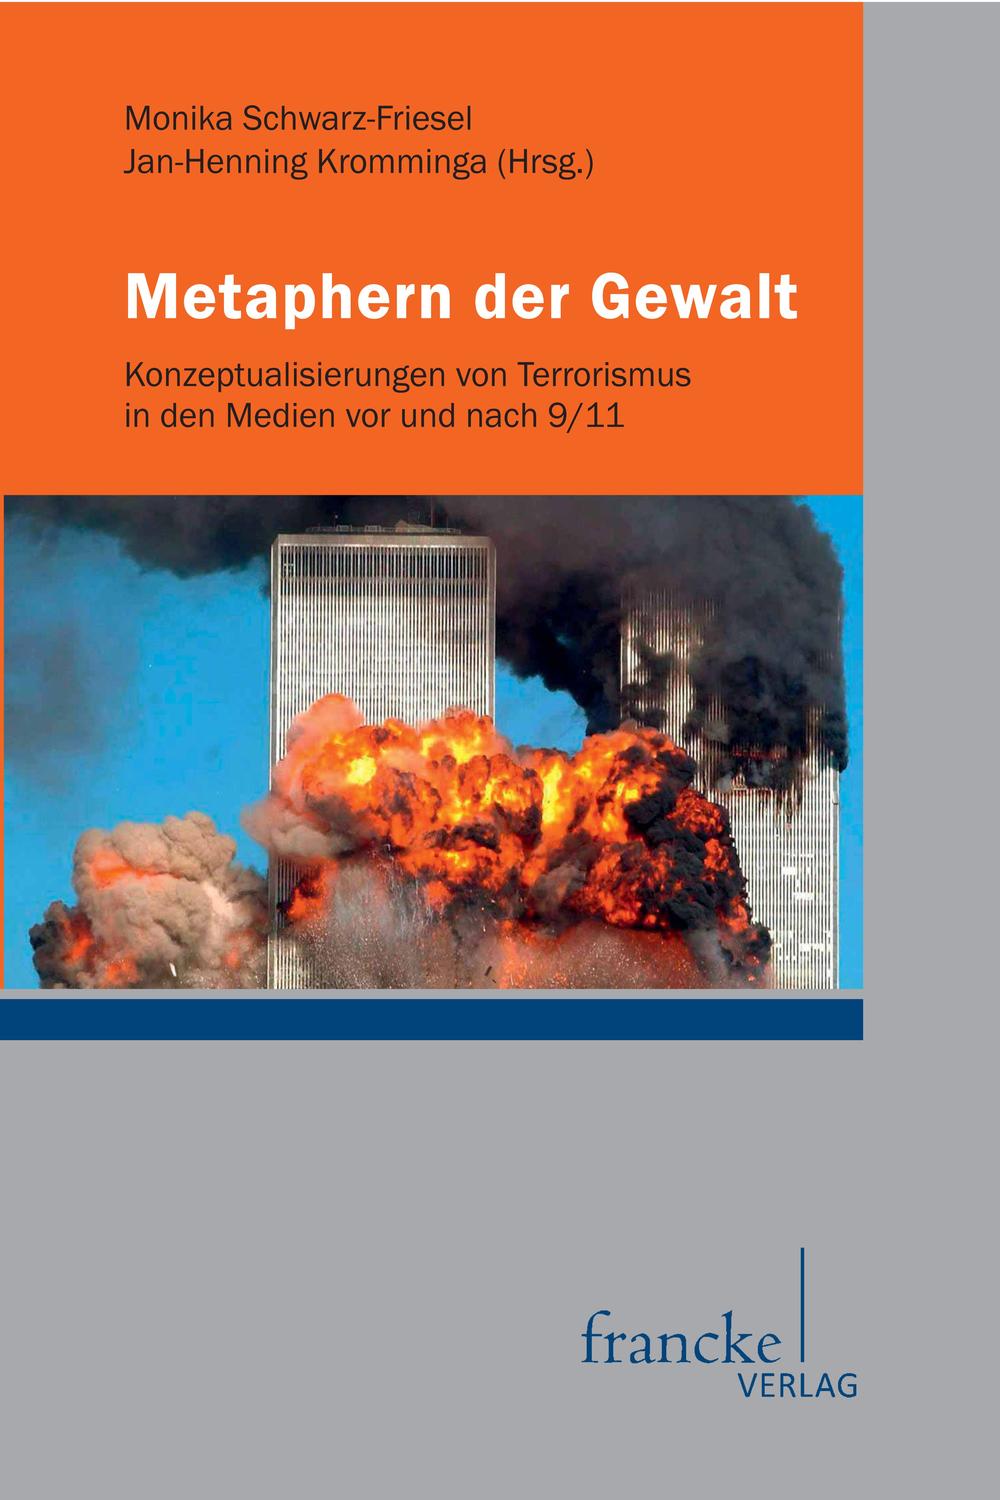 Metaphern der Gewalt - Monika Schwarz-Friesel, Jan-Henning Kromminga